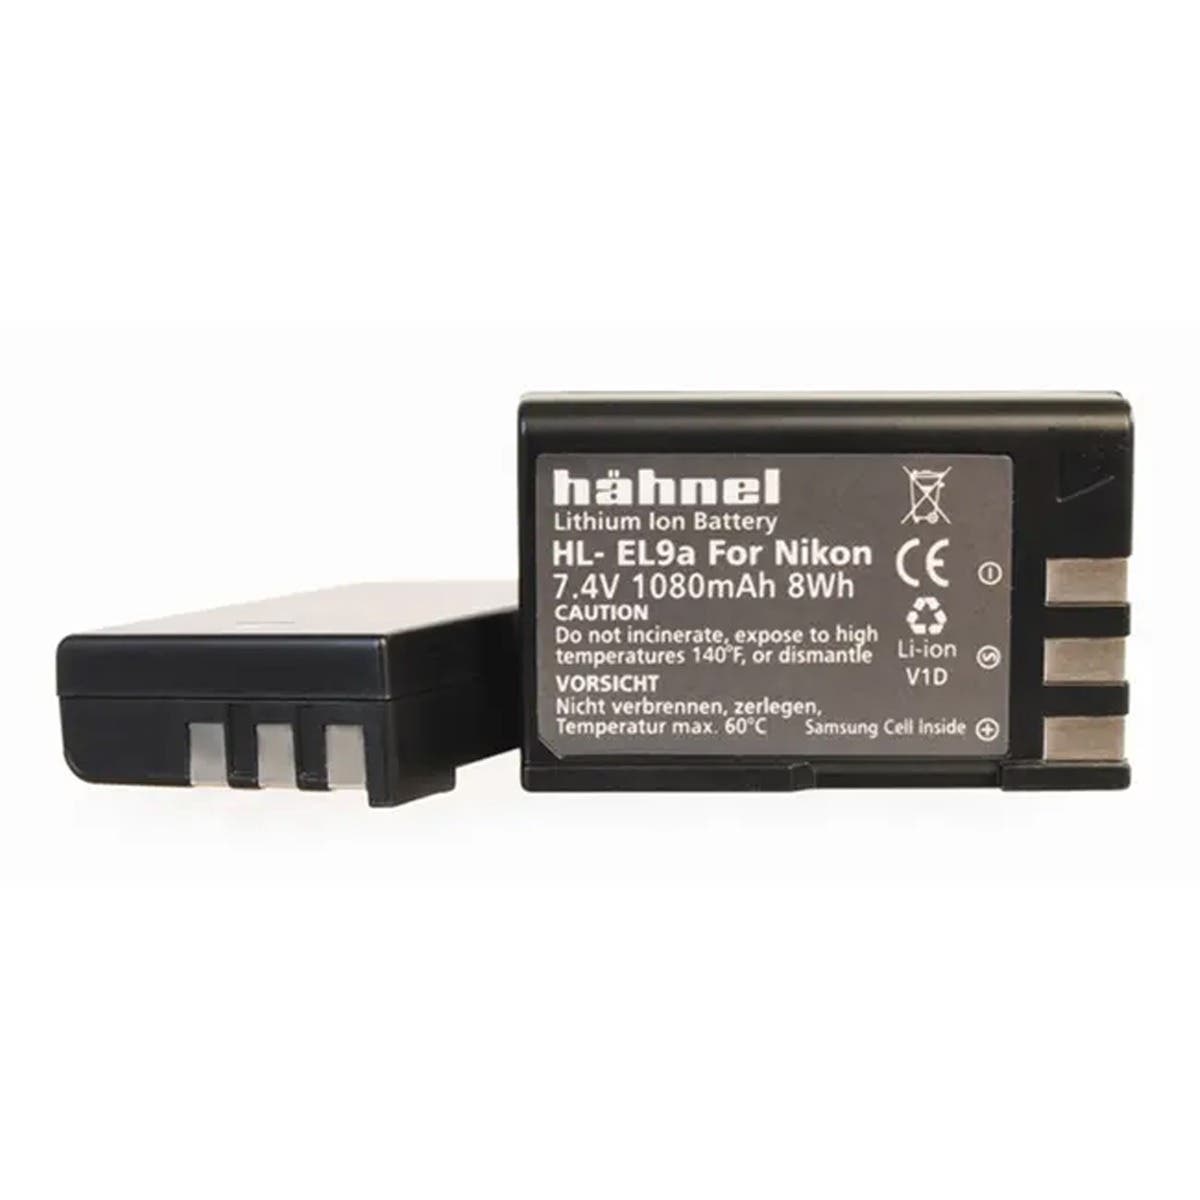 Hahnel Nikon EN-EL9a Li-Ion Battery